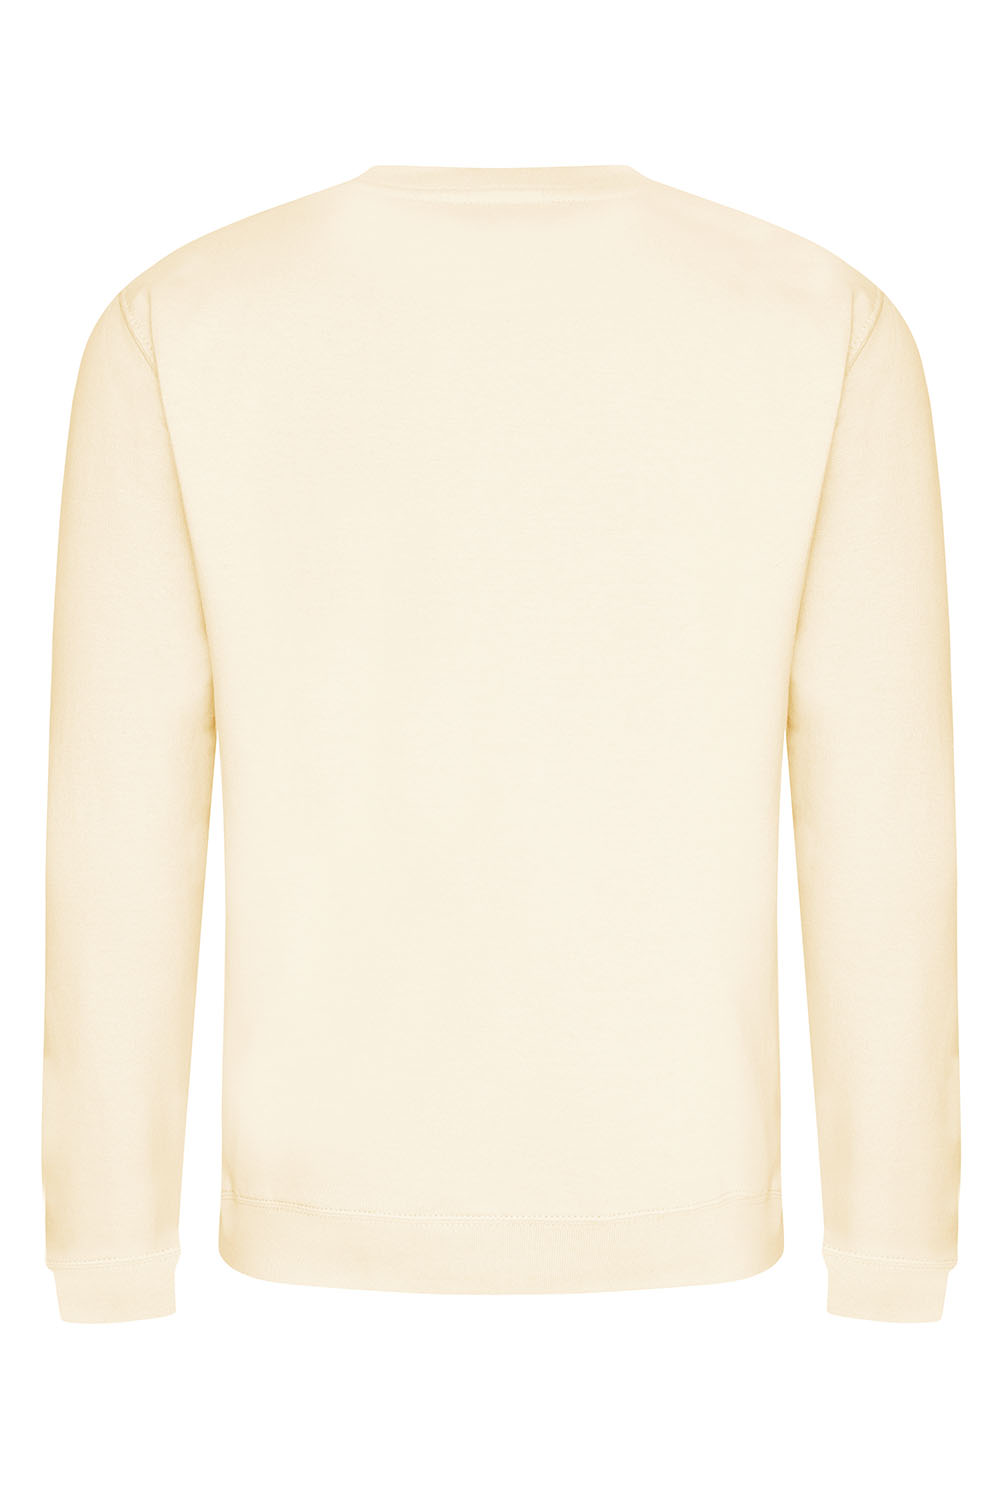 Plain Sweatshirt In Vanilla Milkshake (Single).